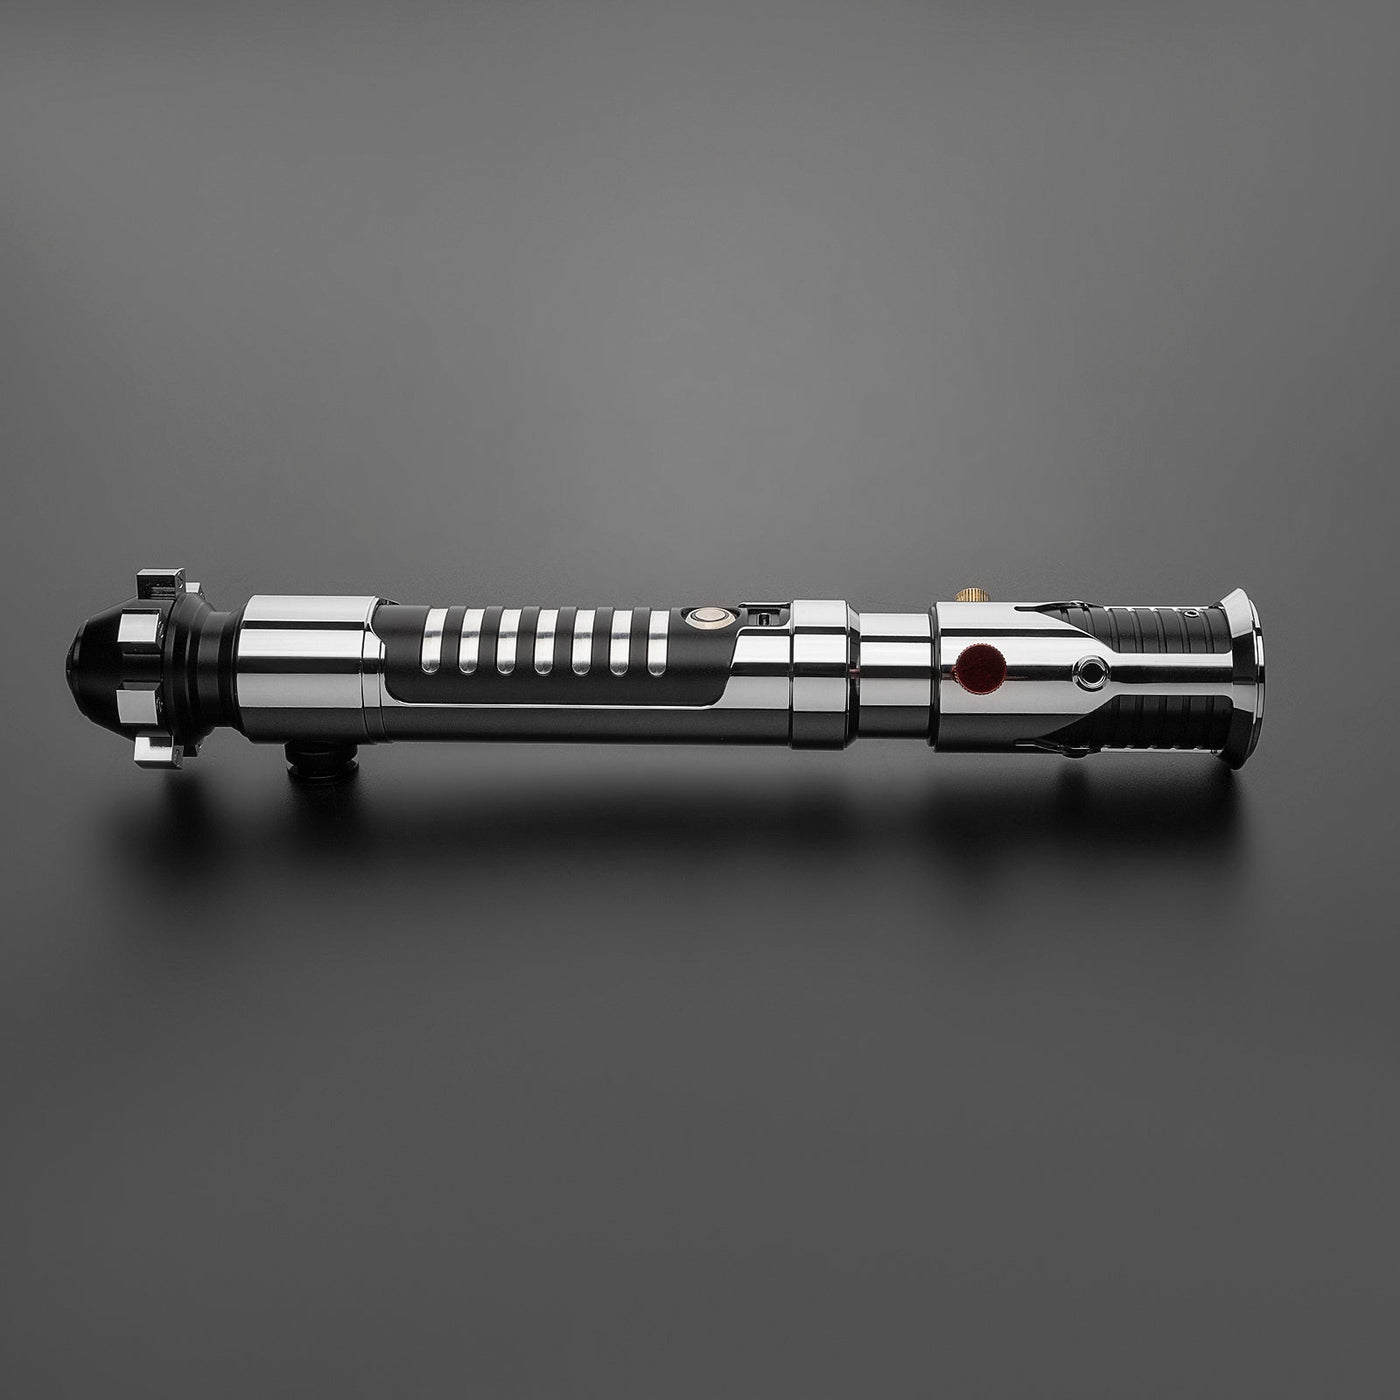 General - KenJo Sabers - Star Wars Lightsaber replica Jedi Sith - Best sabershop Europe - Nederland light sabers kopen -